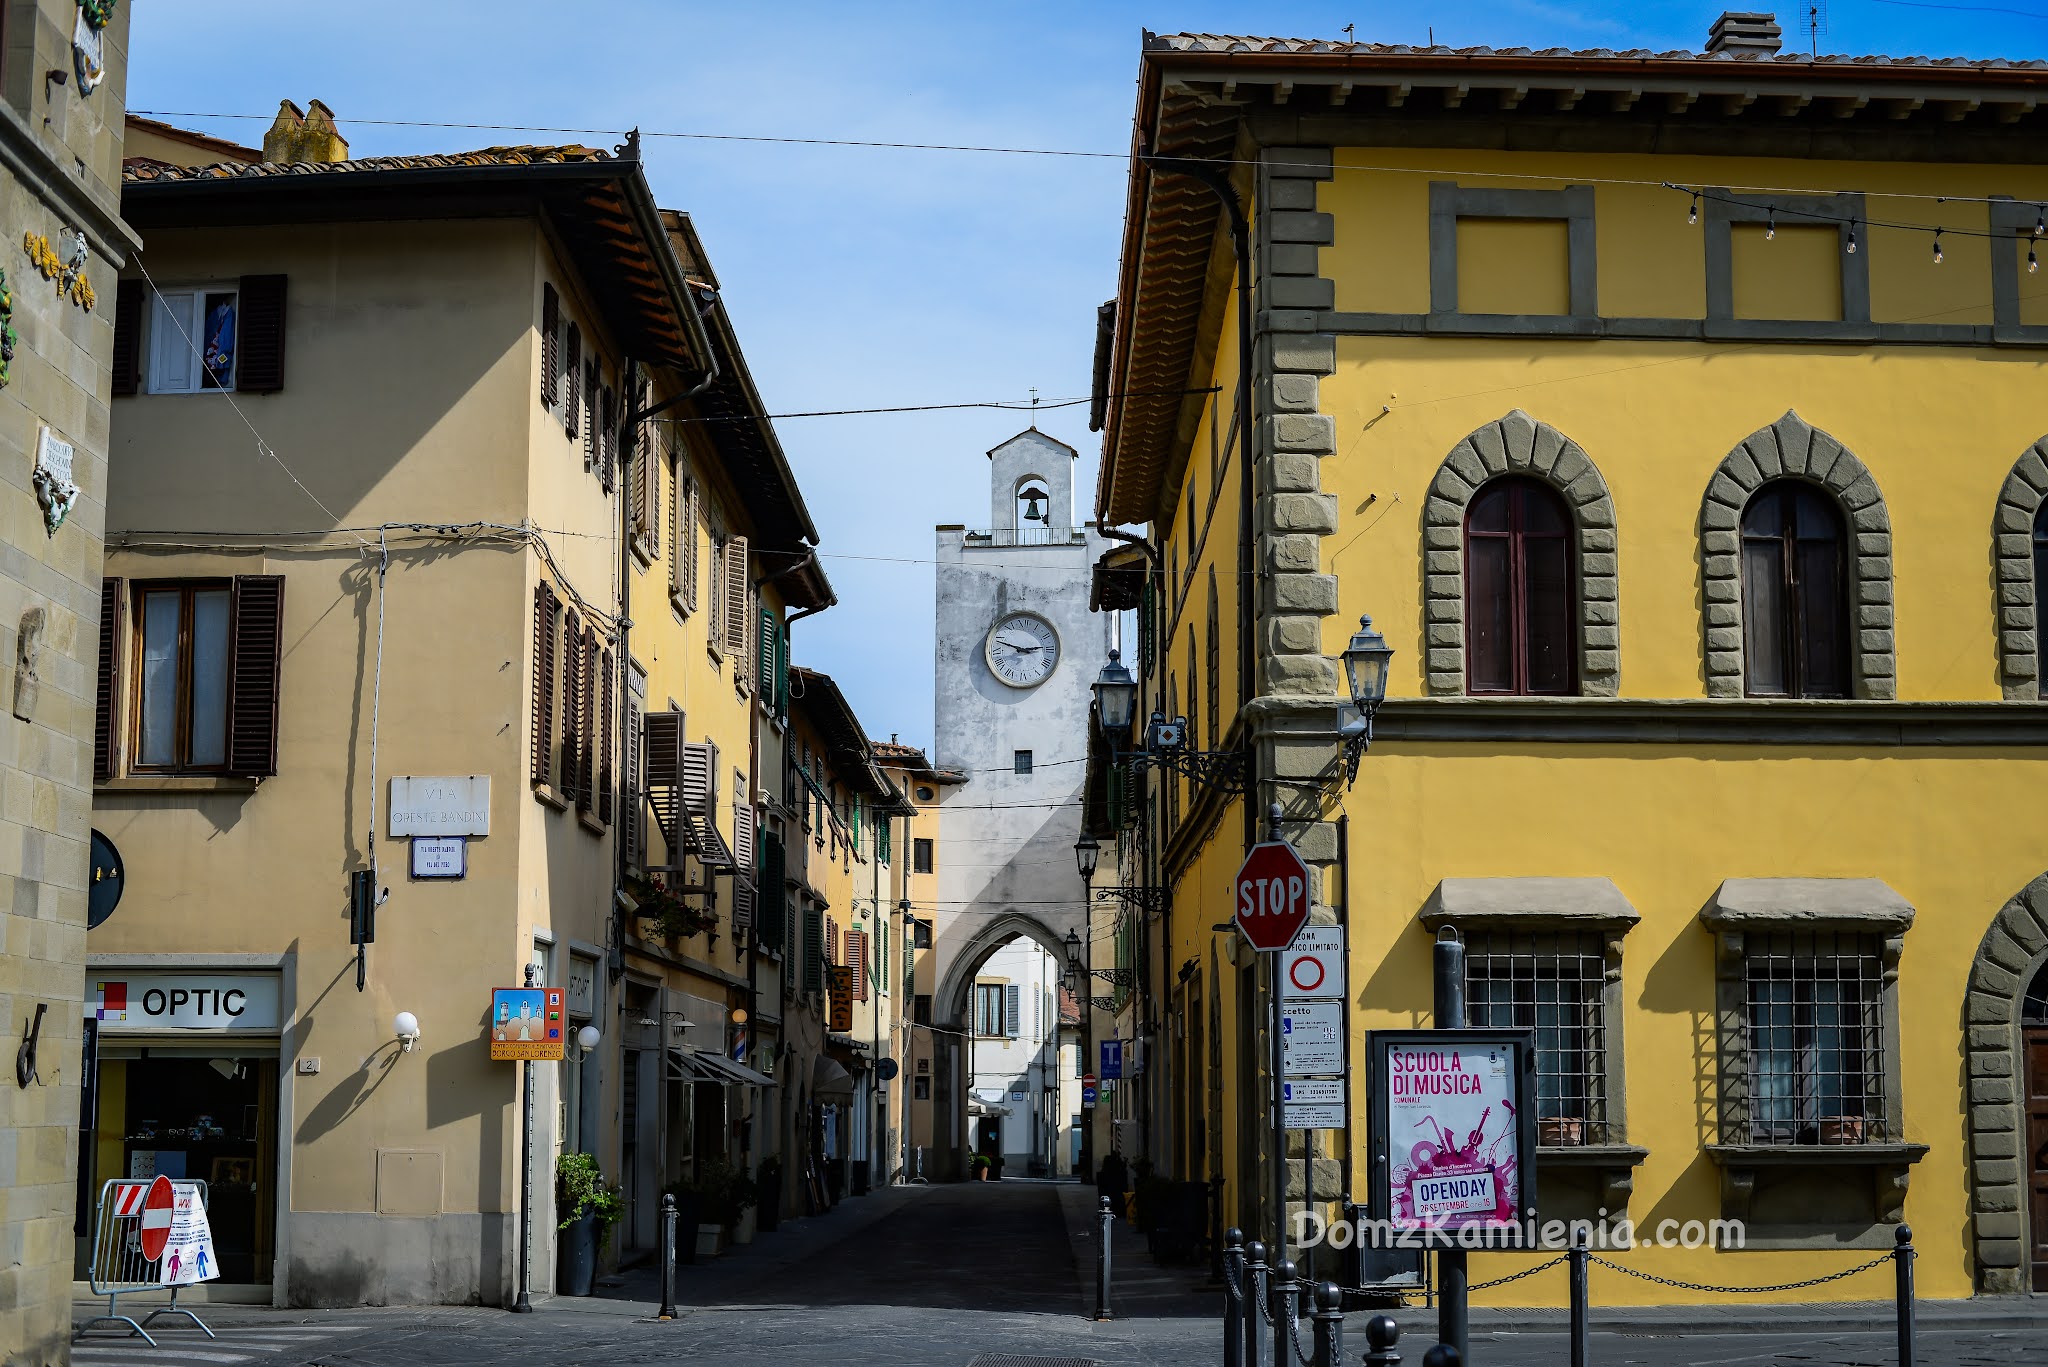 Dom z Kamienia, Mugello, blog o życiu we Włoszech